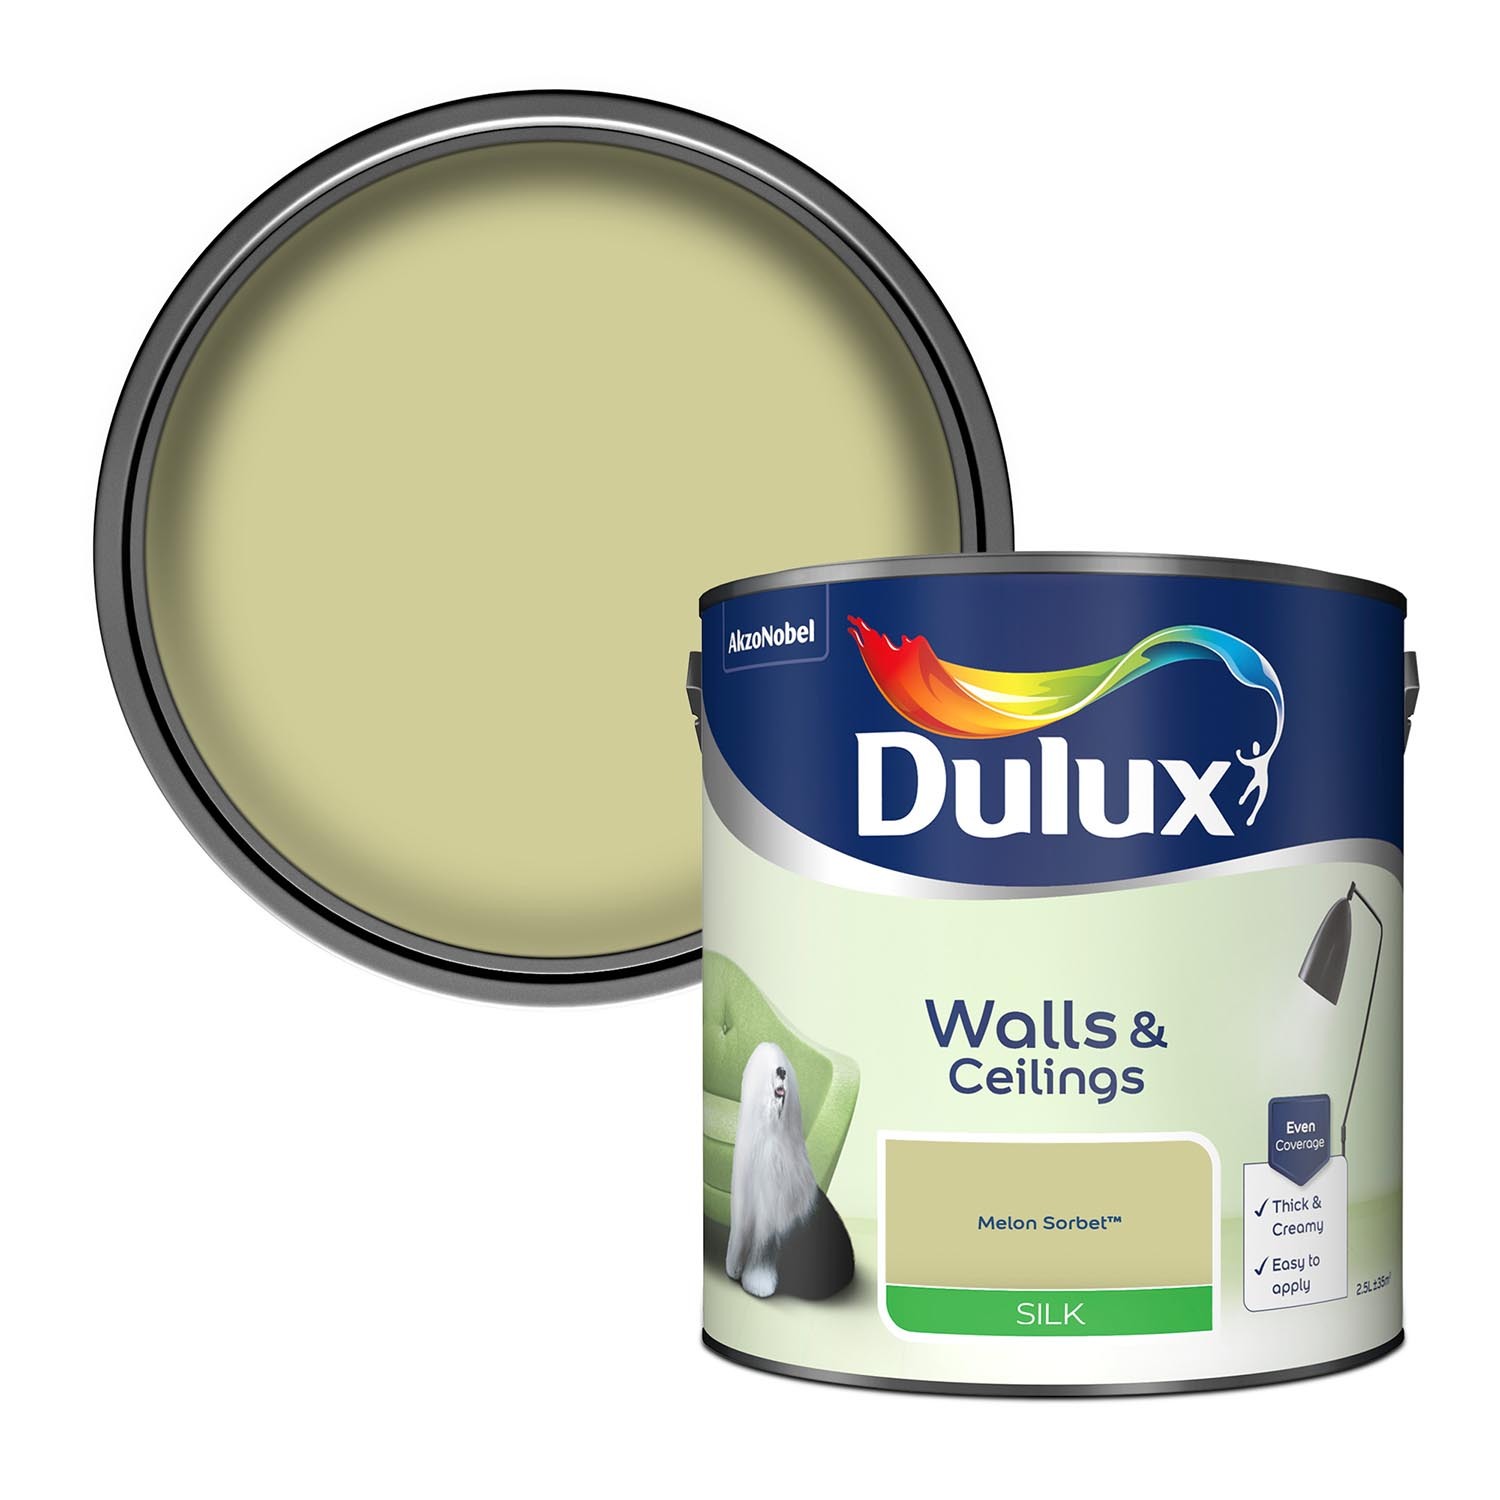 Dulux Walls & Ceilings Melon Sorbet Silk Emulsion Paint 2.5L Image 1